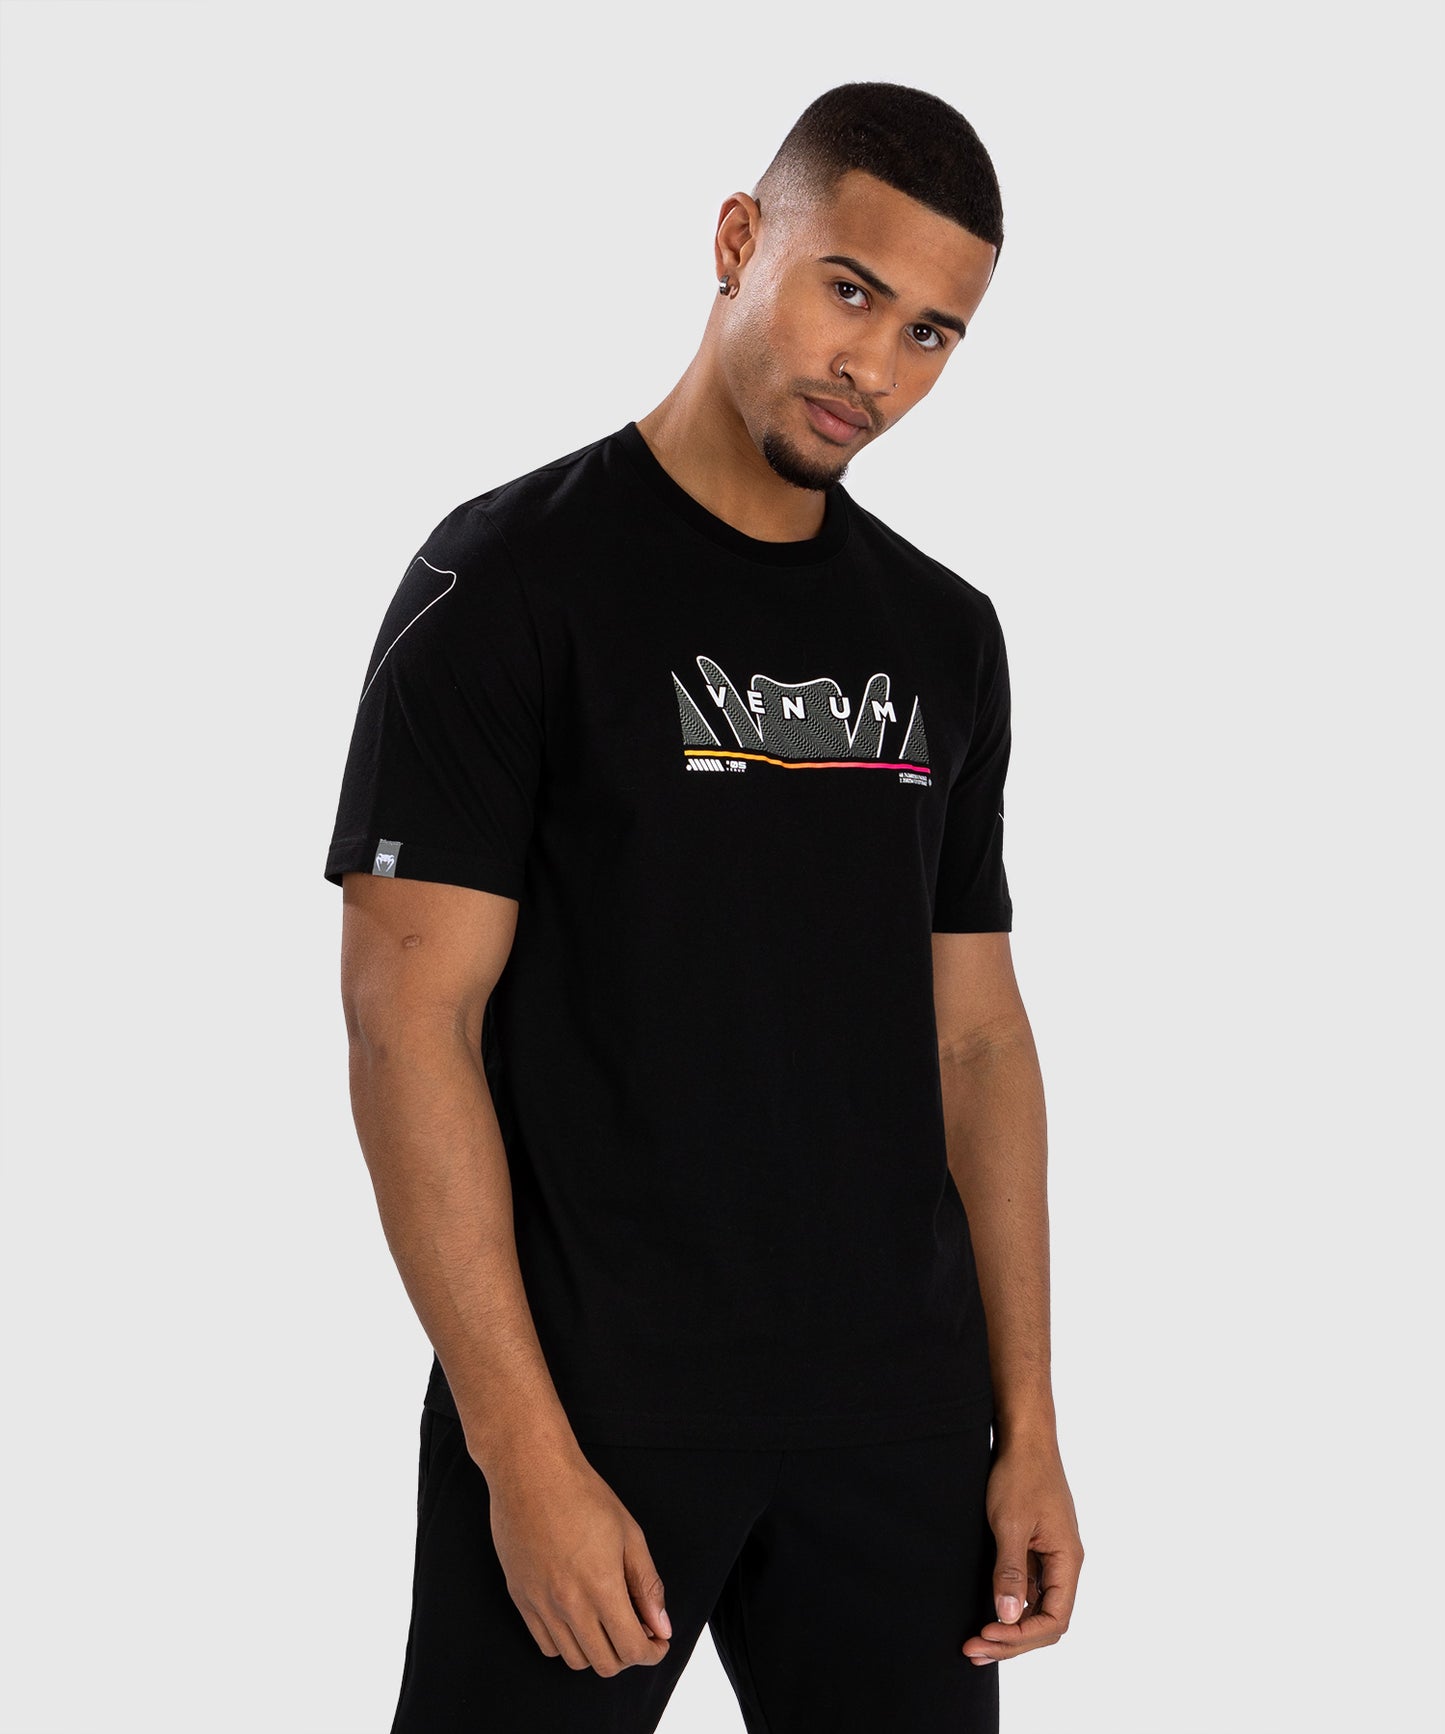 Venum Snake Print T-Shirt - Black